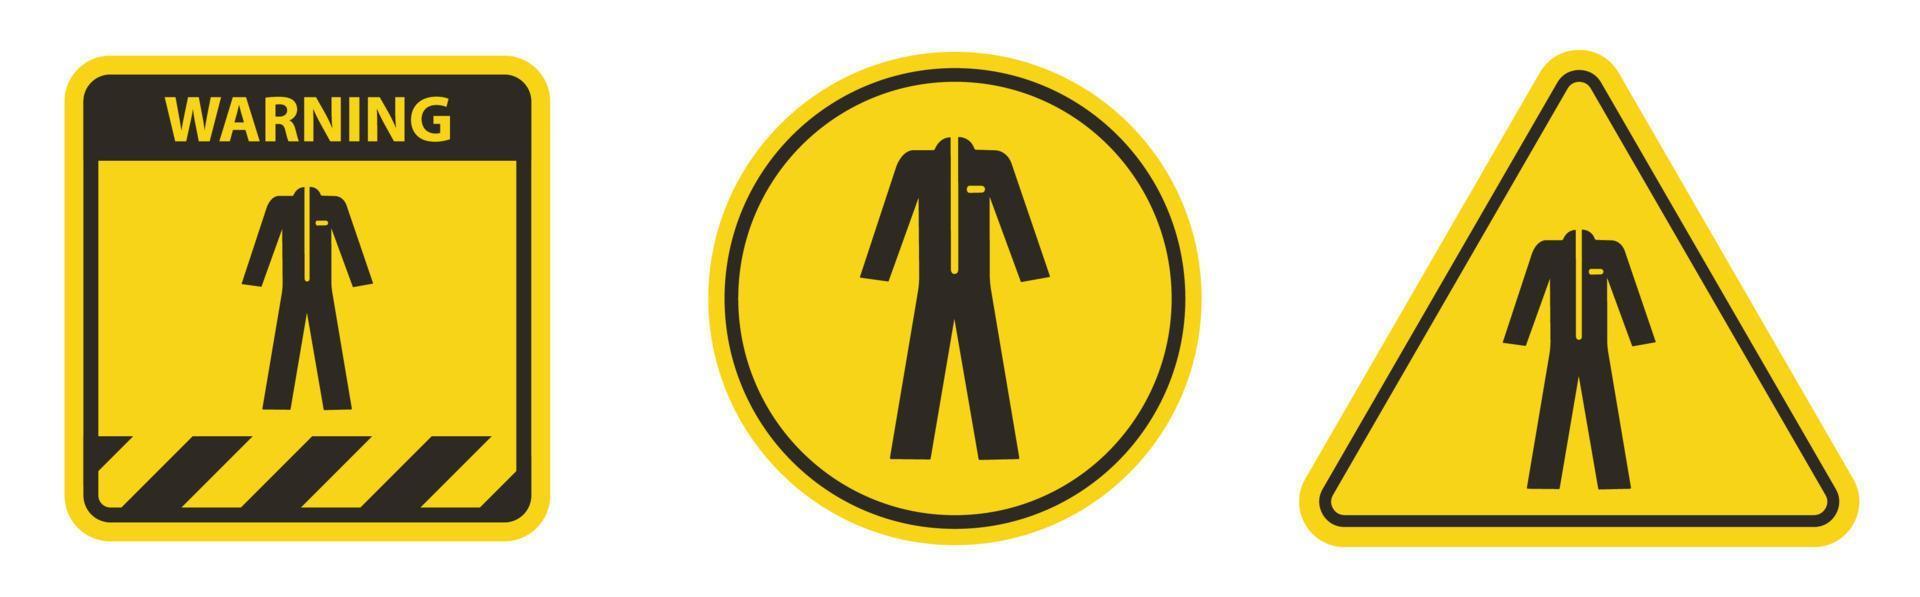 symbole porter des vêtements de protection isoler sur fond blanc, illustration vectorielle eps.10 vecteur